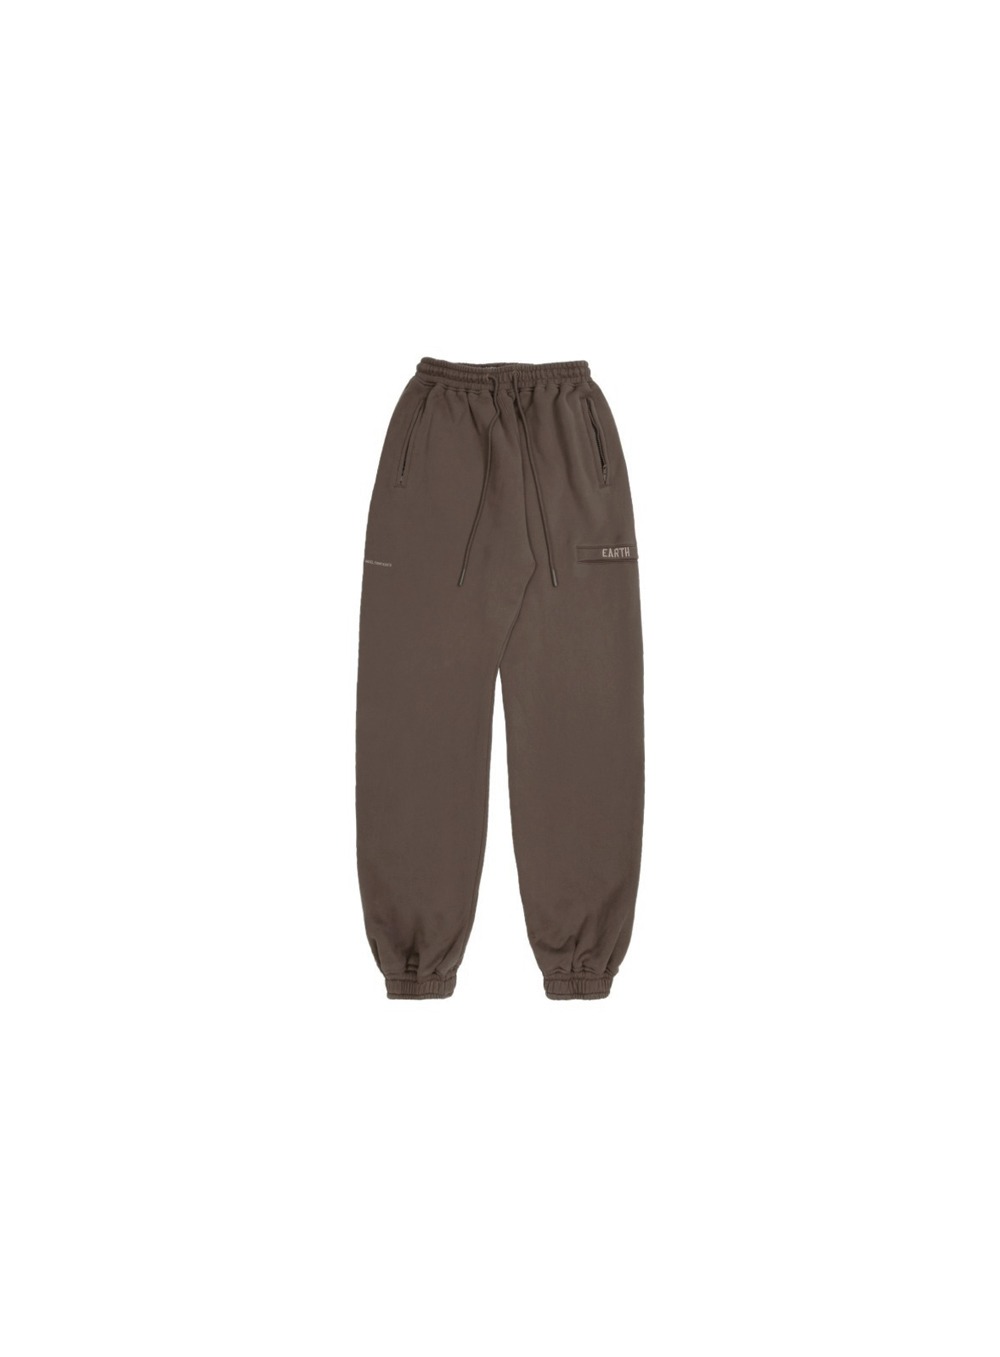 The Vintage Sweatpants - Brown